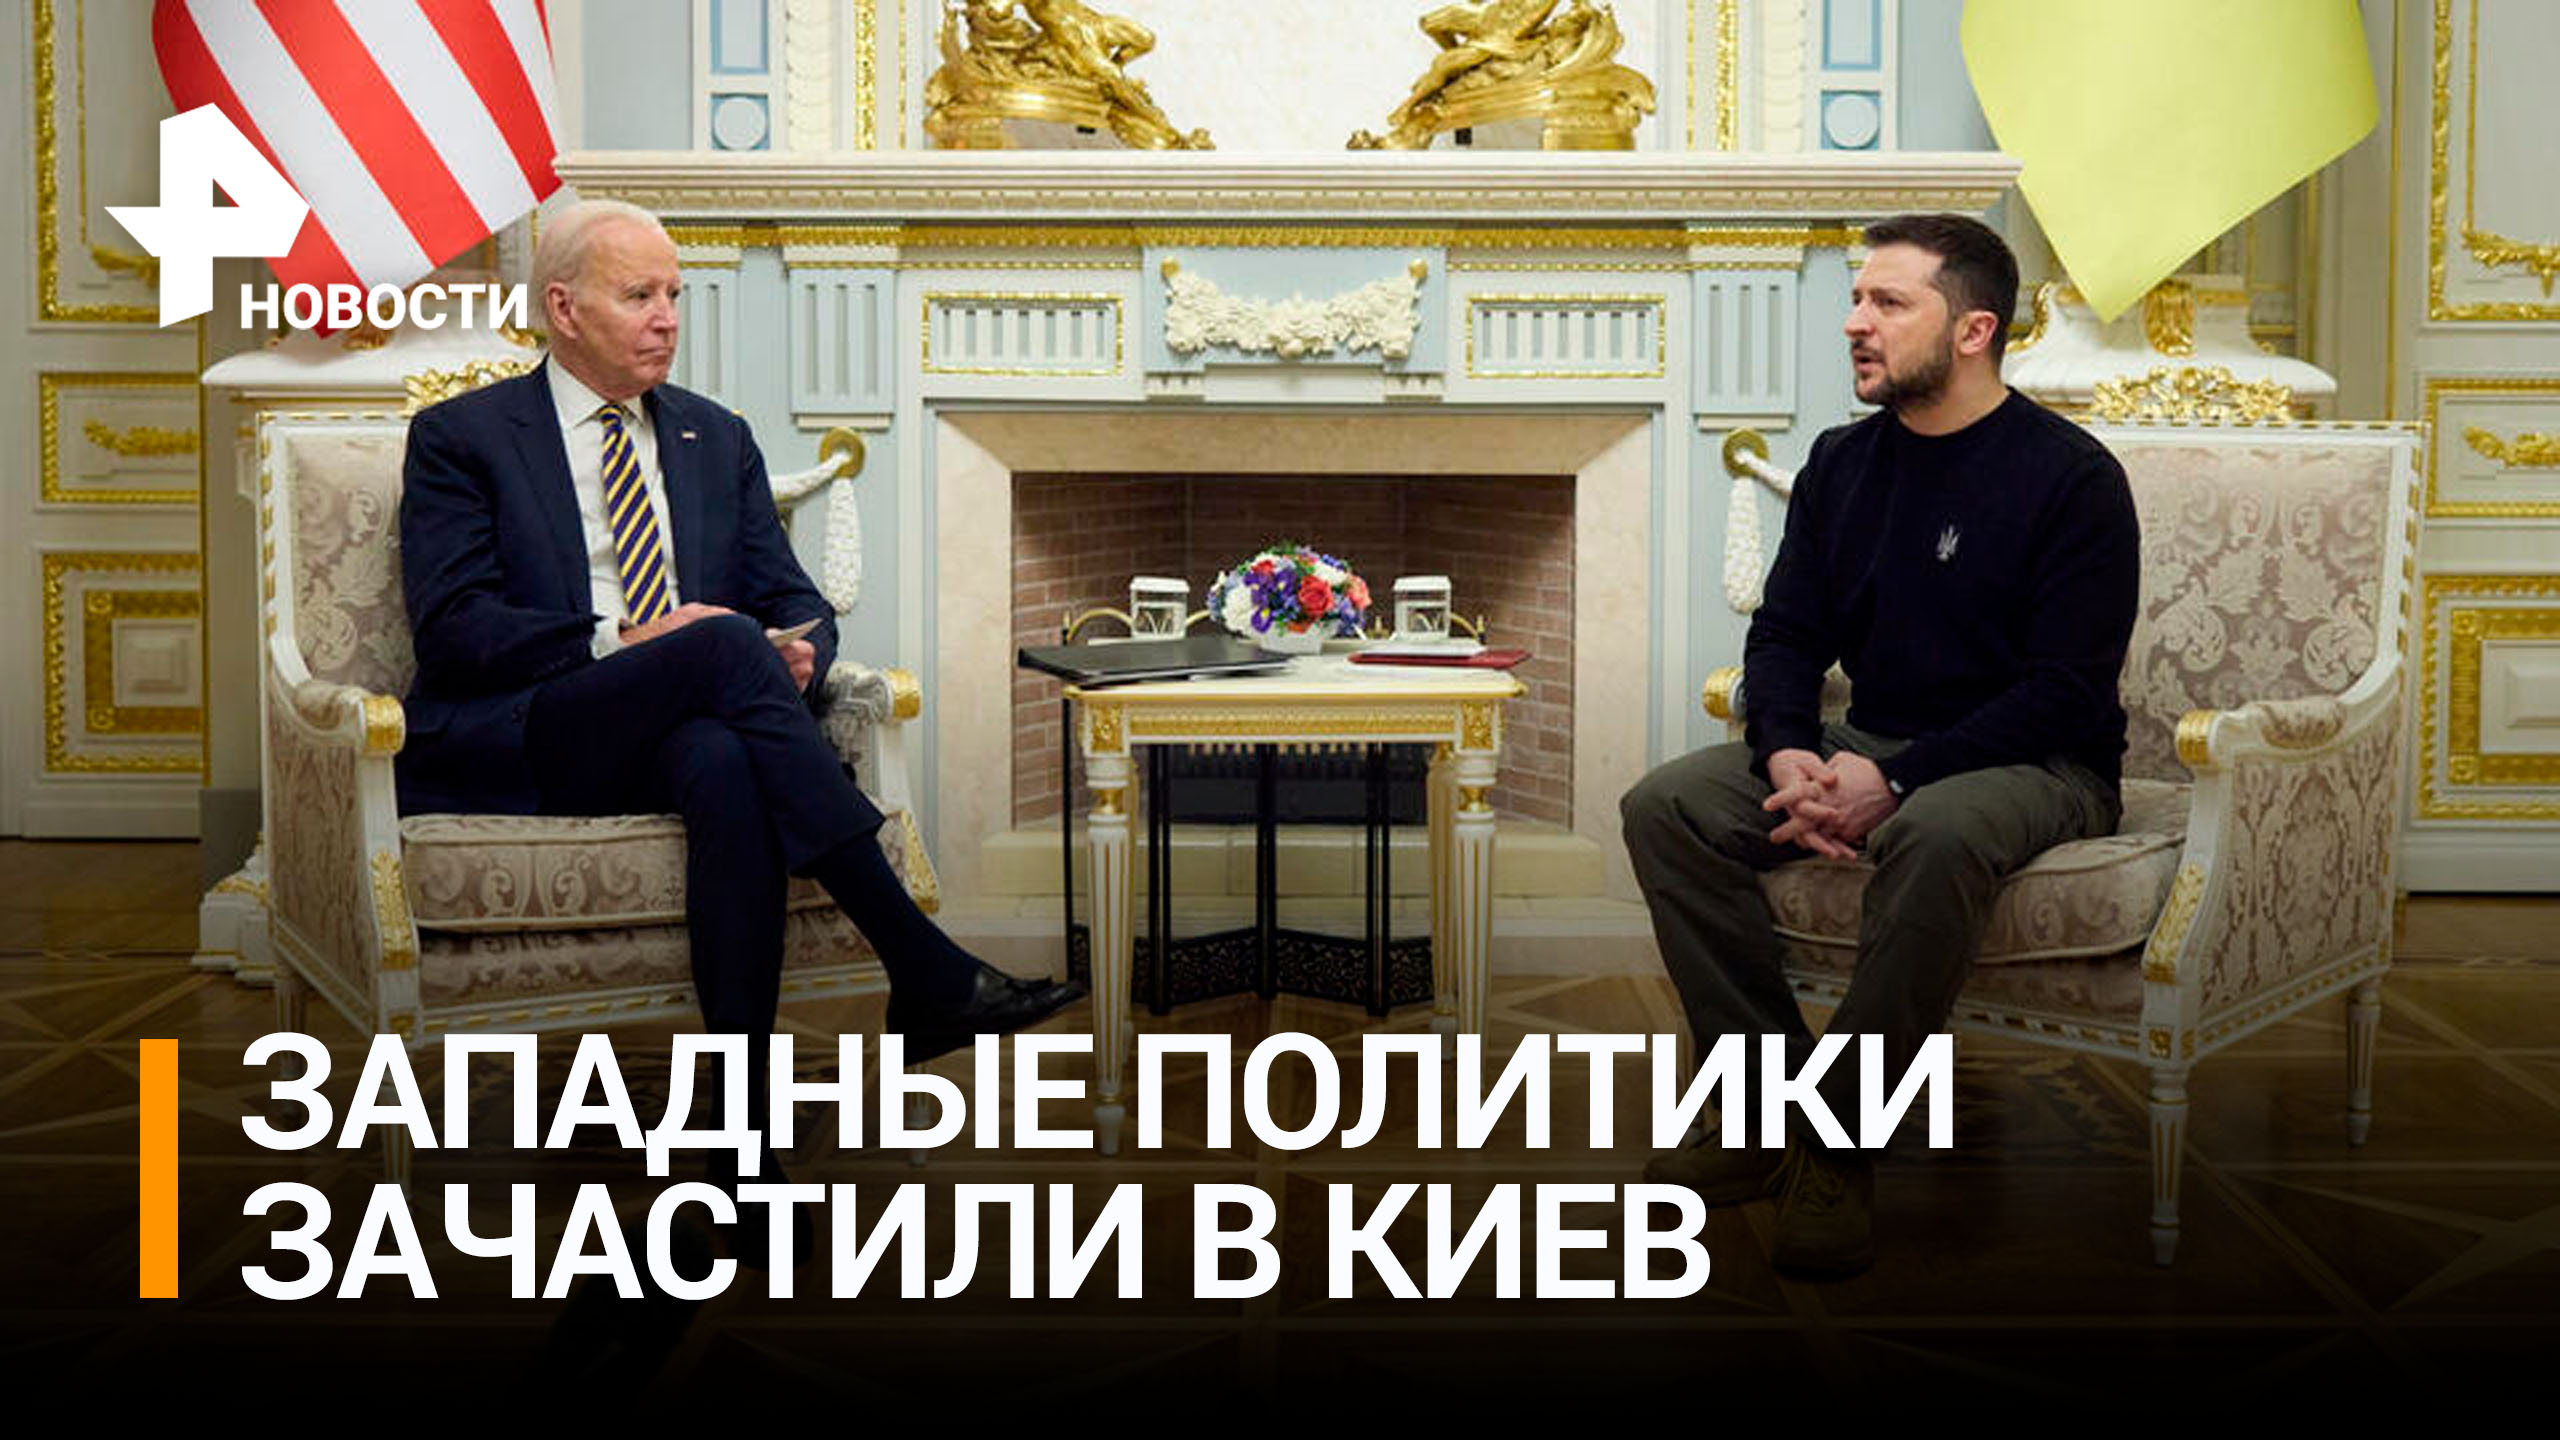 Шоу со спецэффектами: Байден приехал в Киев с секретным визитом / РЕН Новости